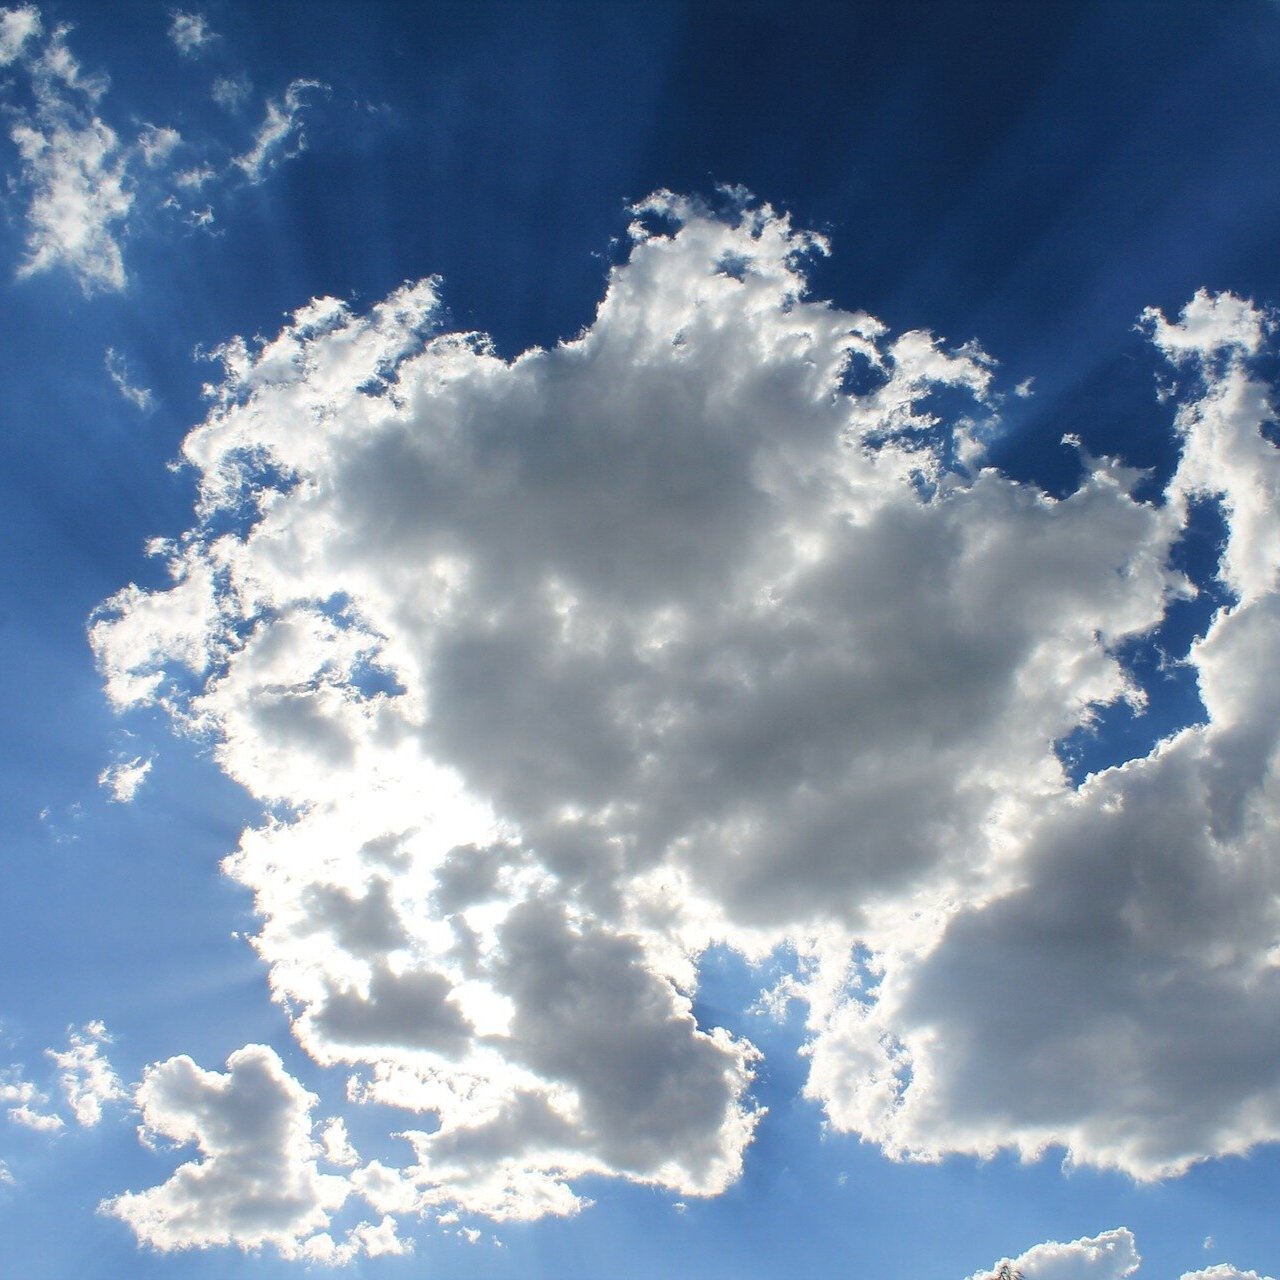 Cloud as Symbol of Holy Spirit